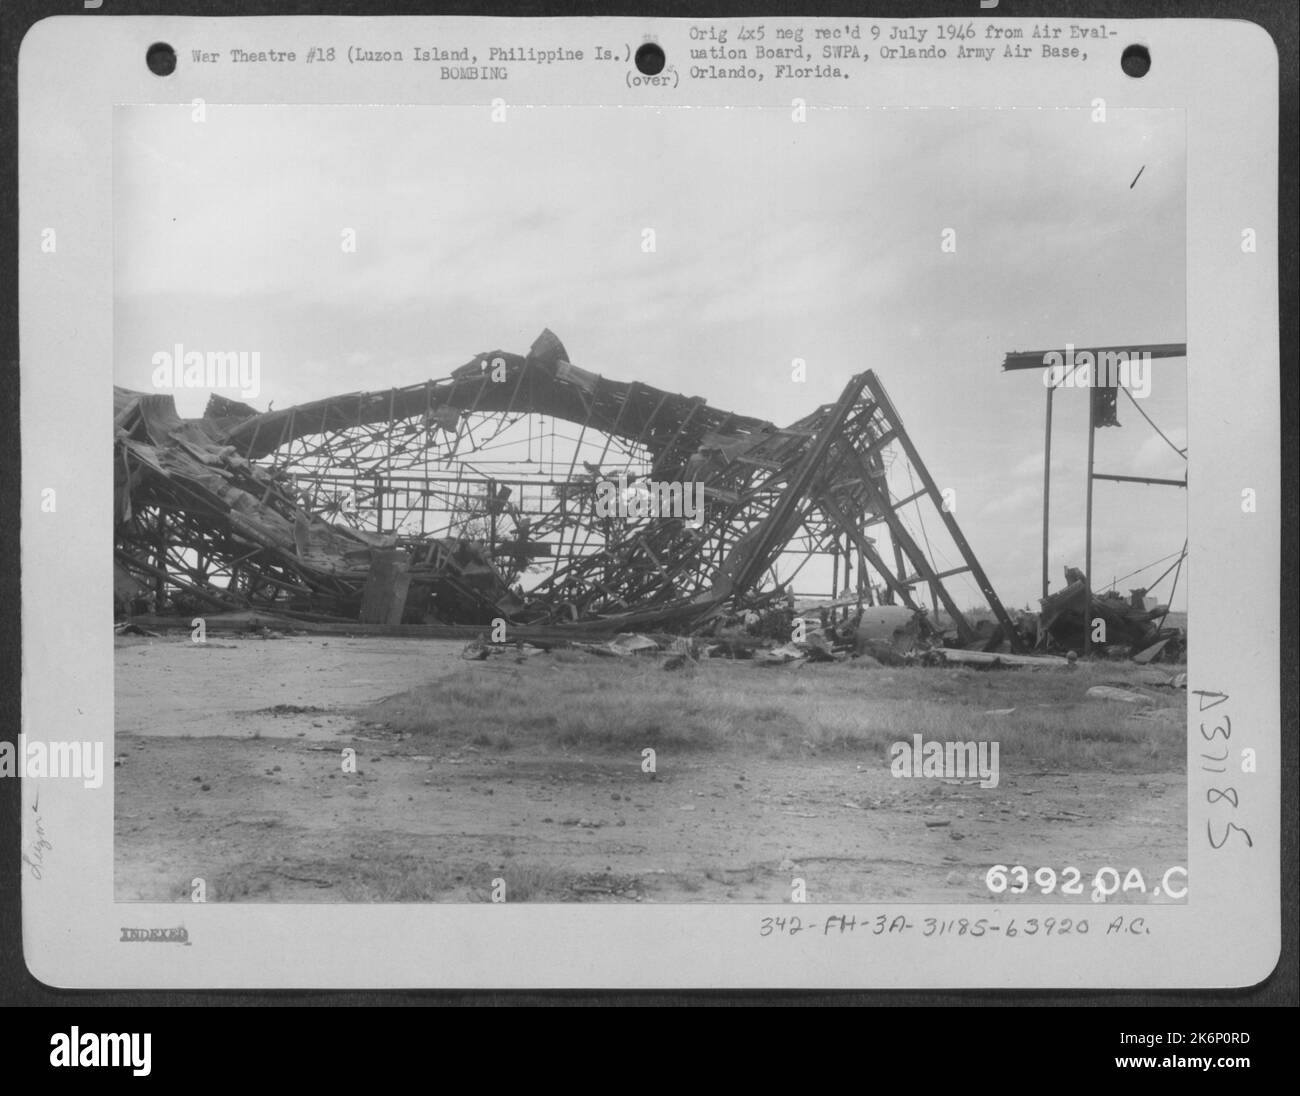 Die Hangars auf dem Clark-Hauptflugplatz wurden von Einheiten der American Air Forces schwer bombardiert. Luzon Island, Philippinische Inseln. 1945. Stockfoto